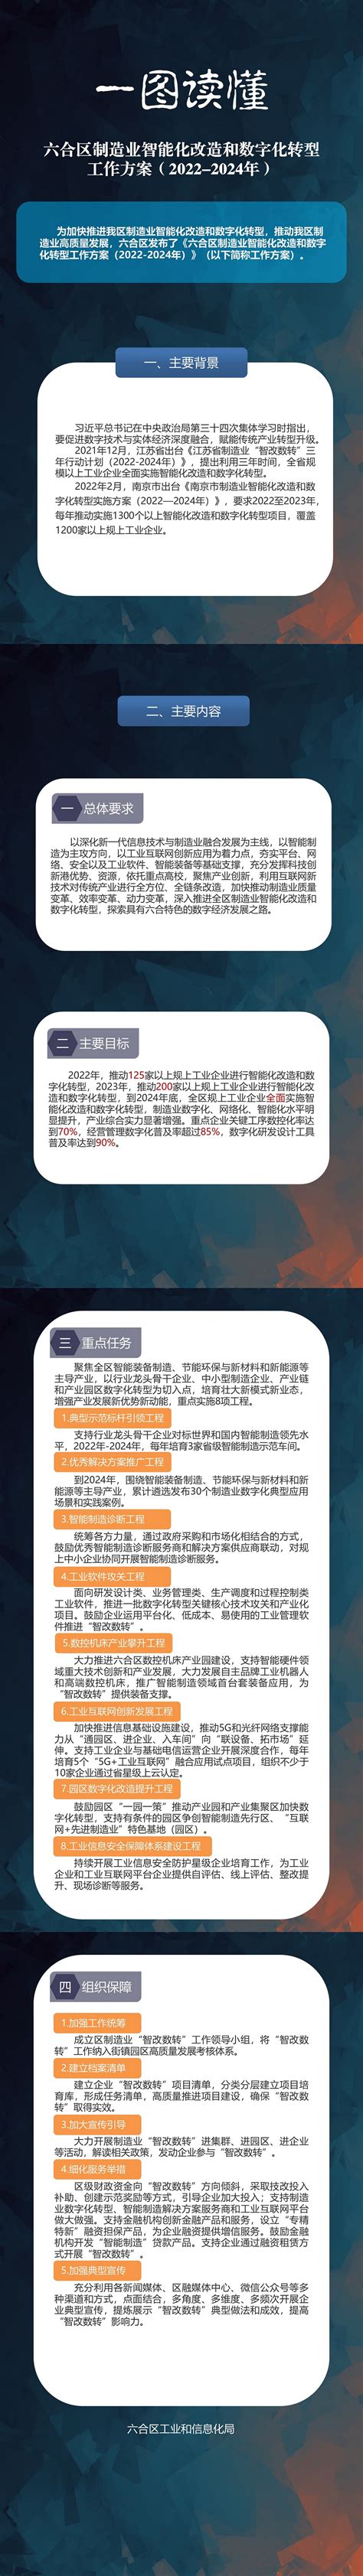 六合区搭建“政产学研”交流平台助力“2020南京创新周”_江南时报